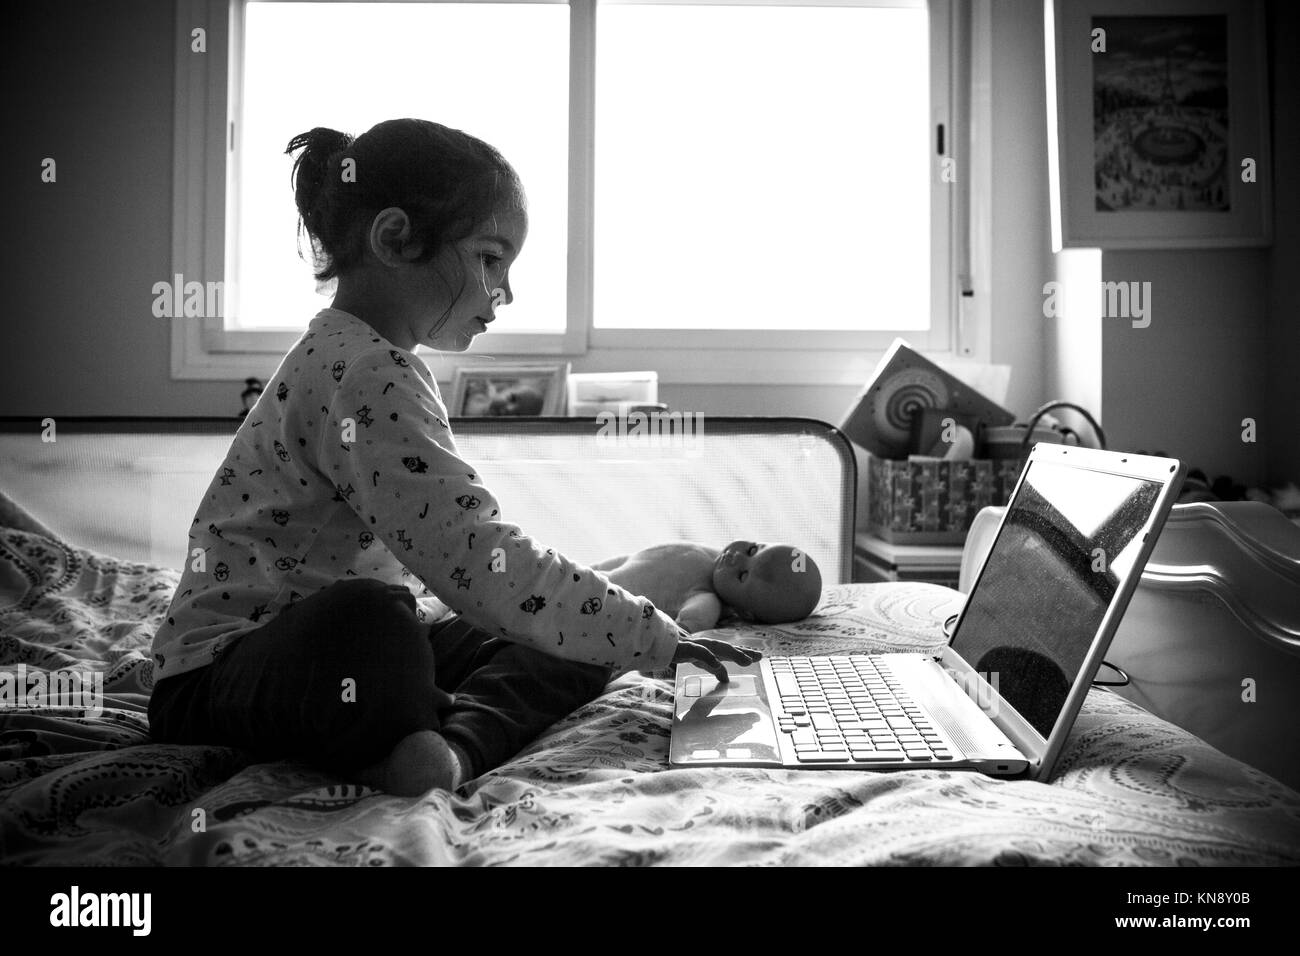 Petite fille assise dans le lit et jouer à des jeux en ligne dans sa chambre. Tourné en noir et blanc. Banque D'Images